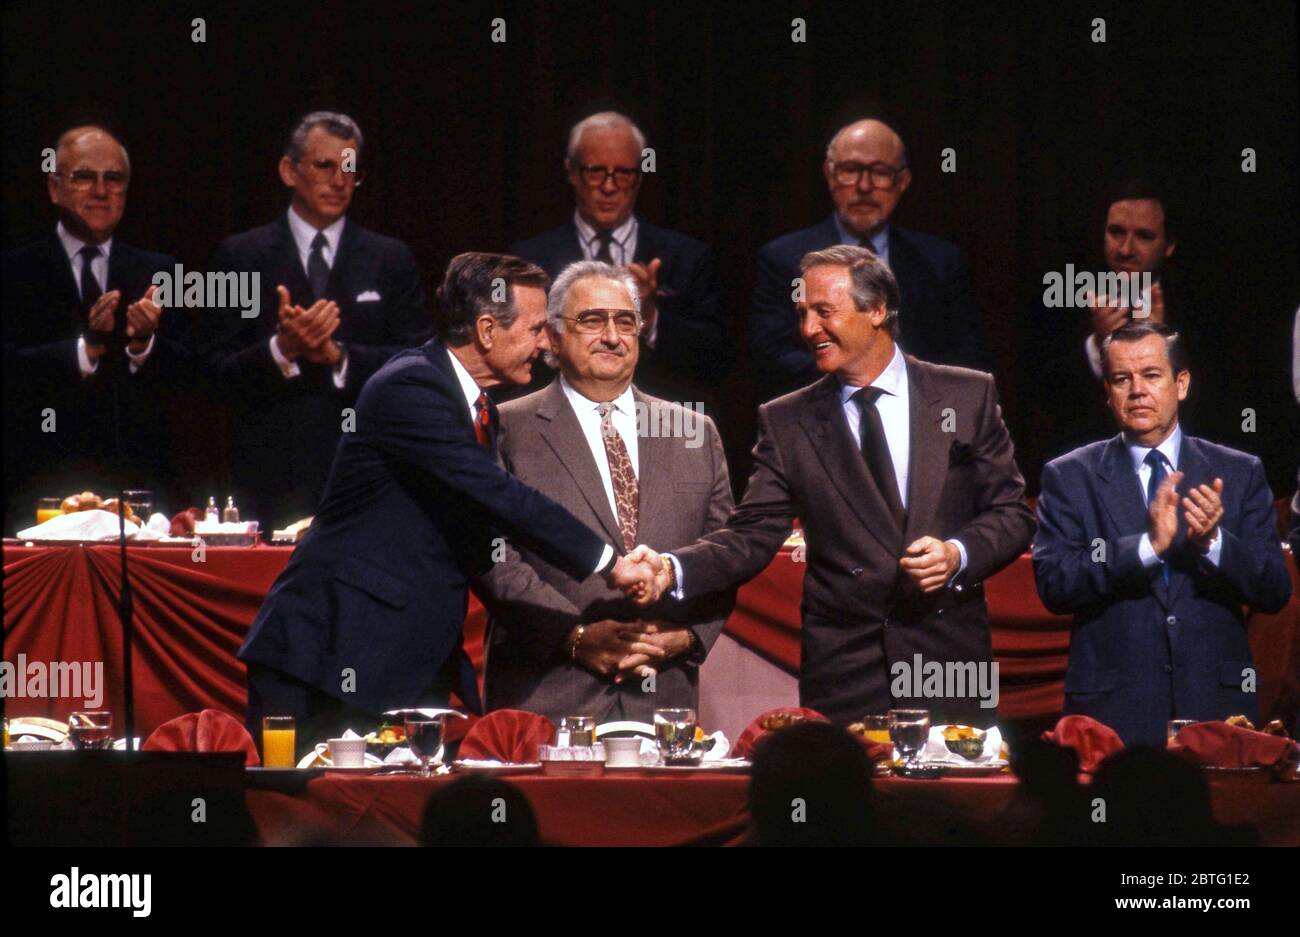 Le président George Bush se serre la main avec Jerry Weintraub après avoir pris la parole devant des membres de l'Académie des arts et des sciences de la télévision à Los Angeles, vers les années 1990 Banque D'Images